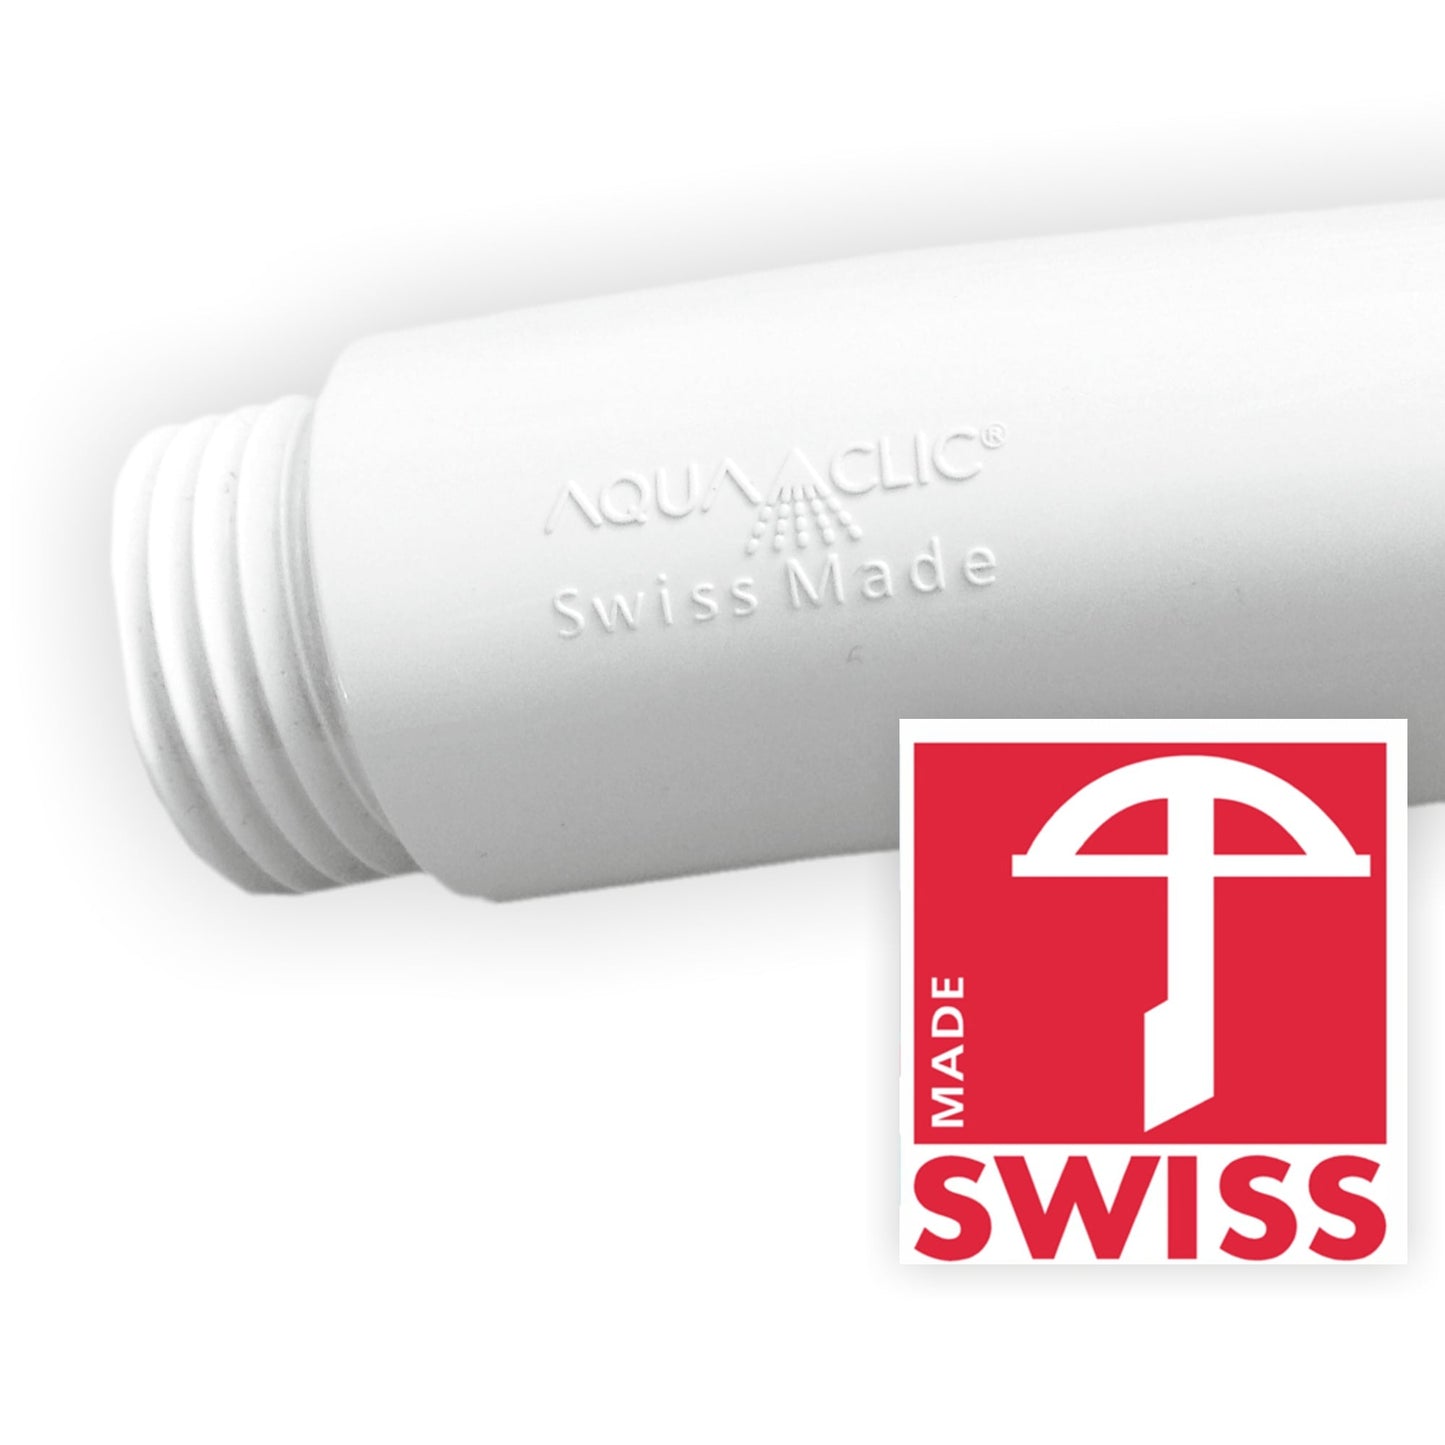 Poignée estampillée SwissClima et SwissMade ainsi que logo en forme d'arbalète du label SWISS MADE